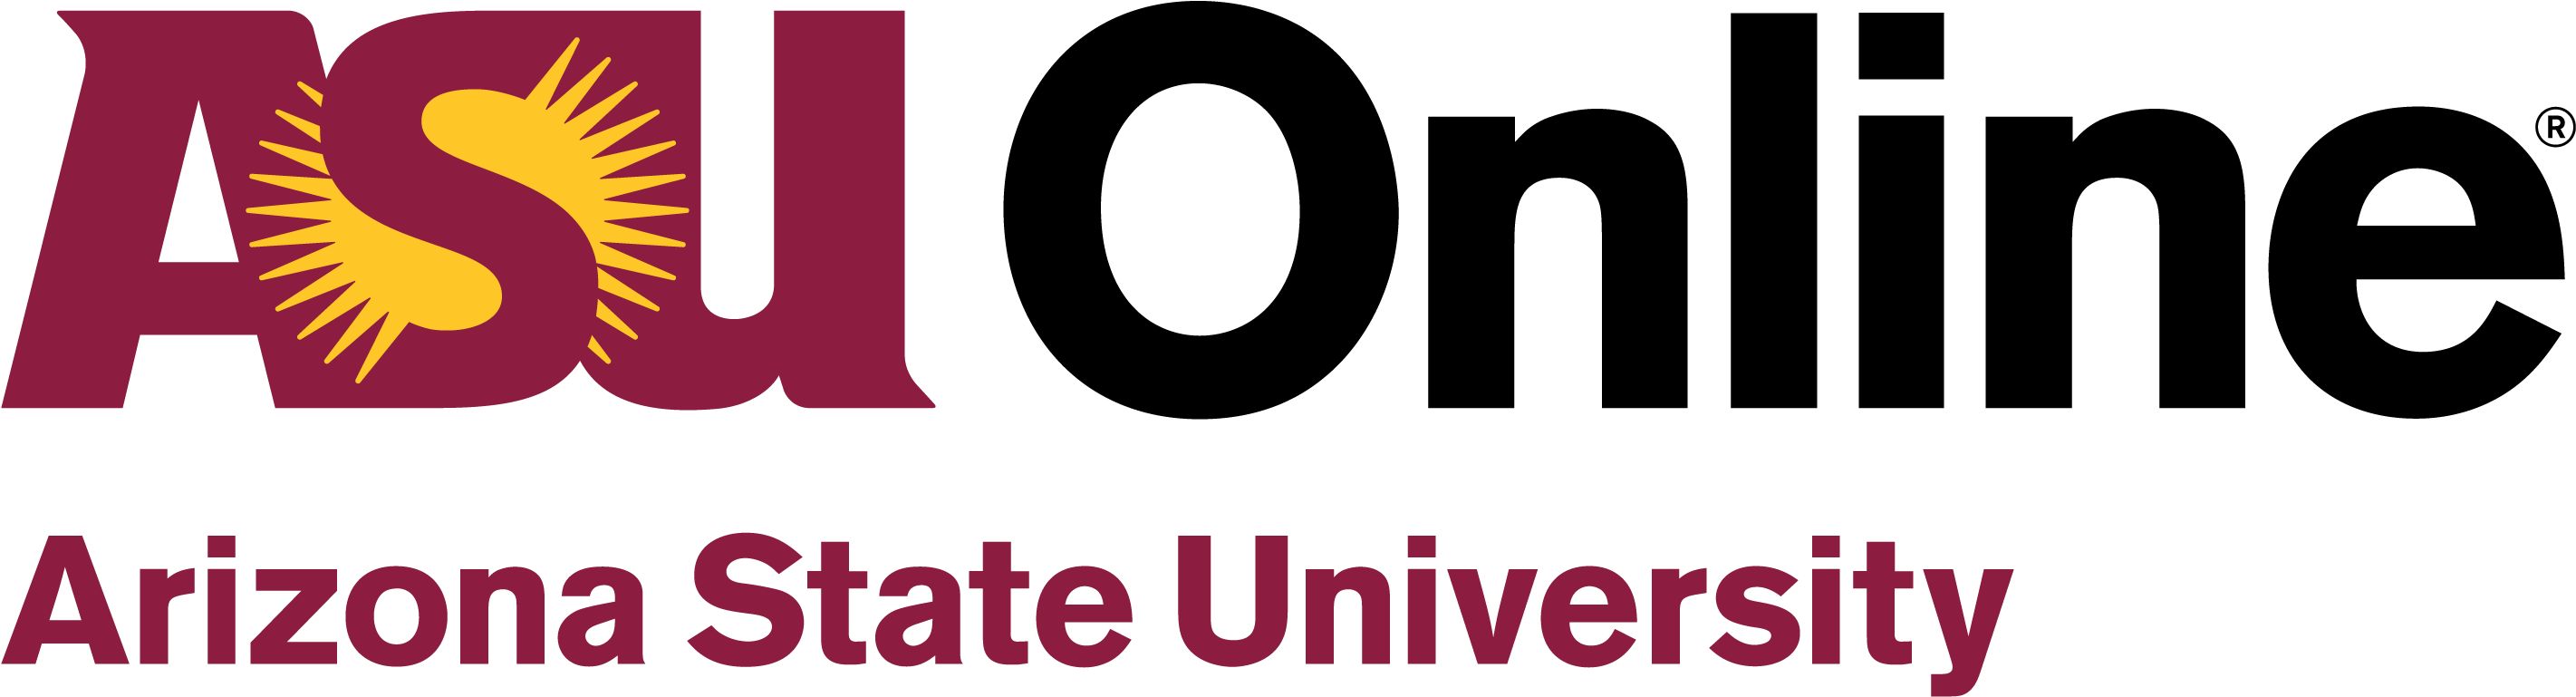 Arizona State University (ASU) Logo PNG Free Image